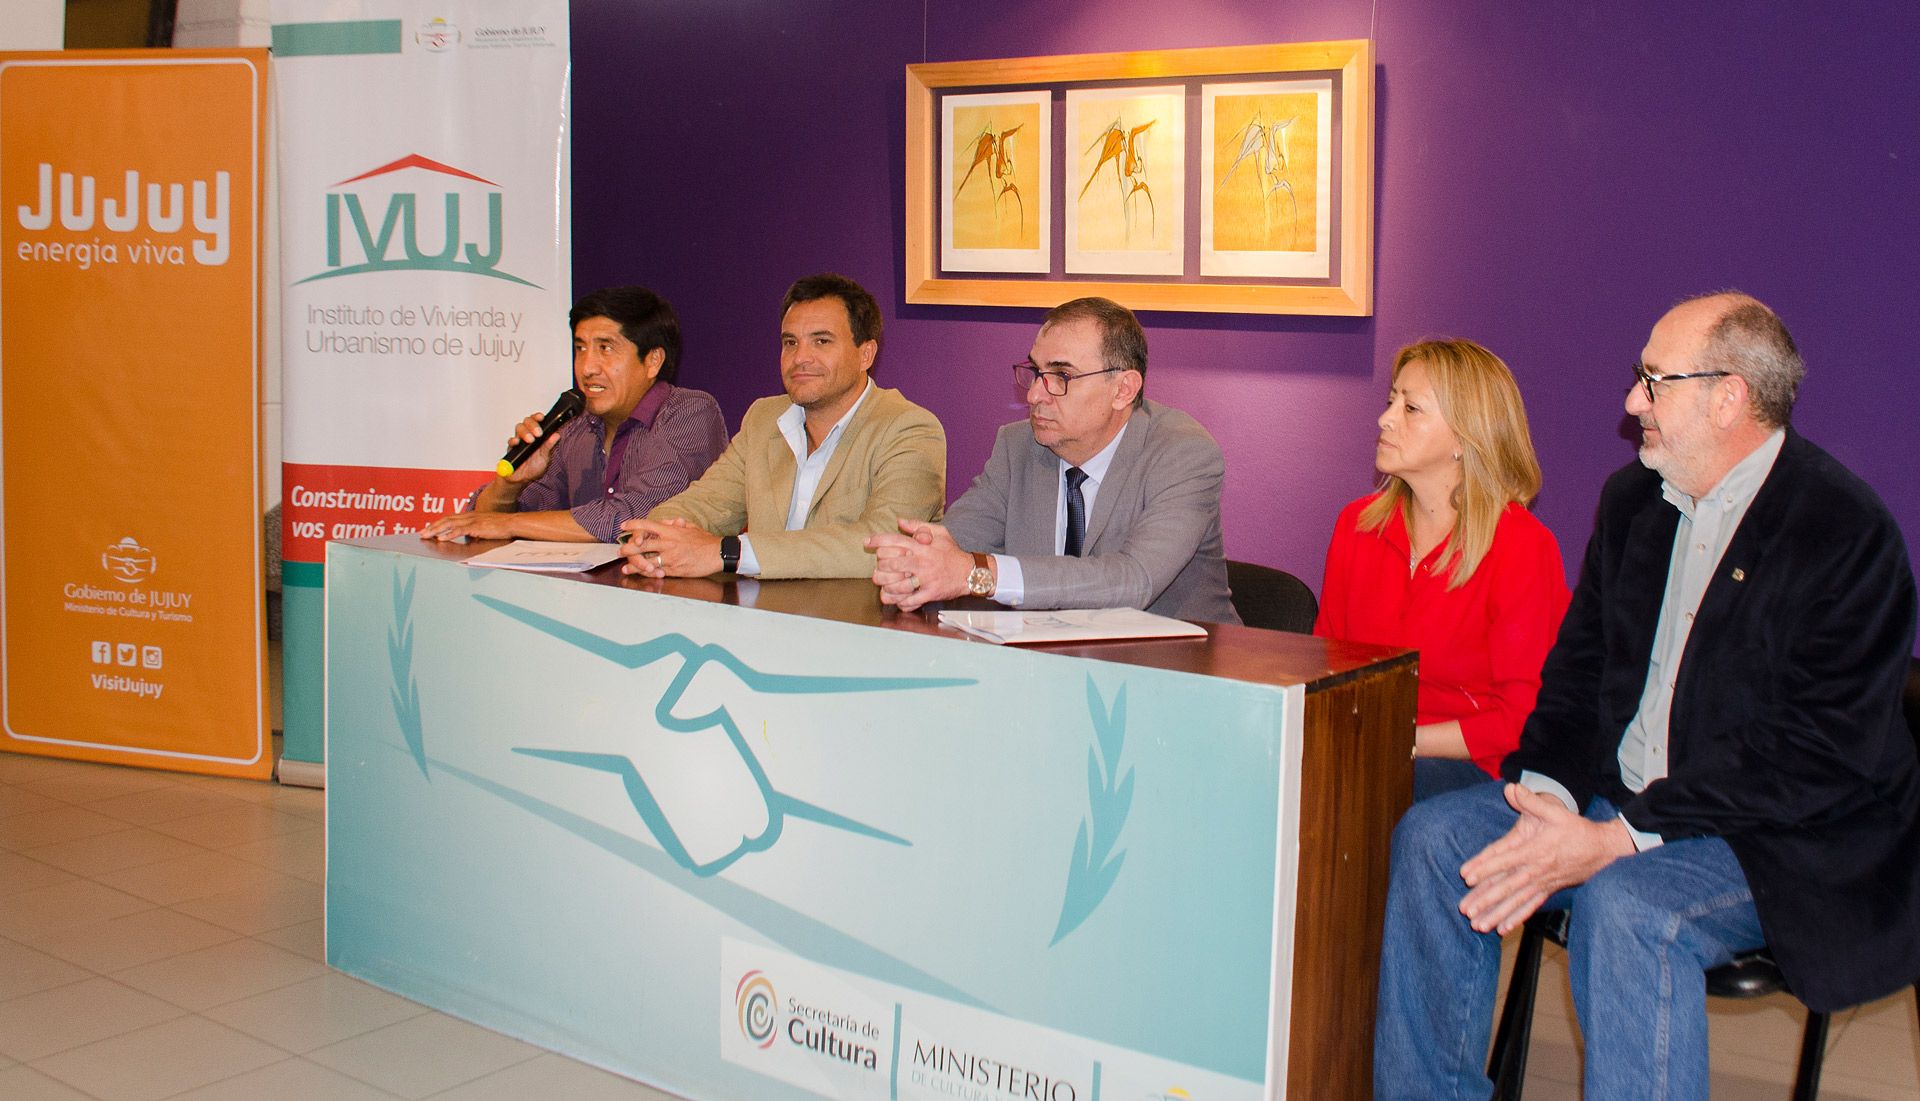 Conferencia prensa Ivuj-Turismo